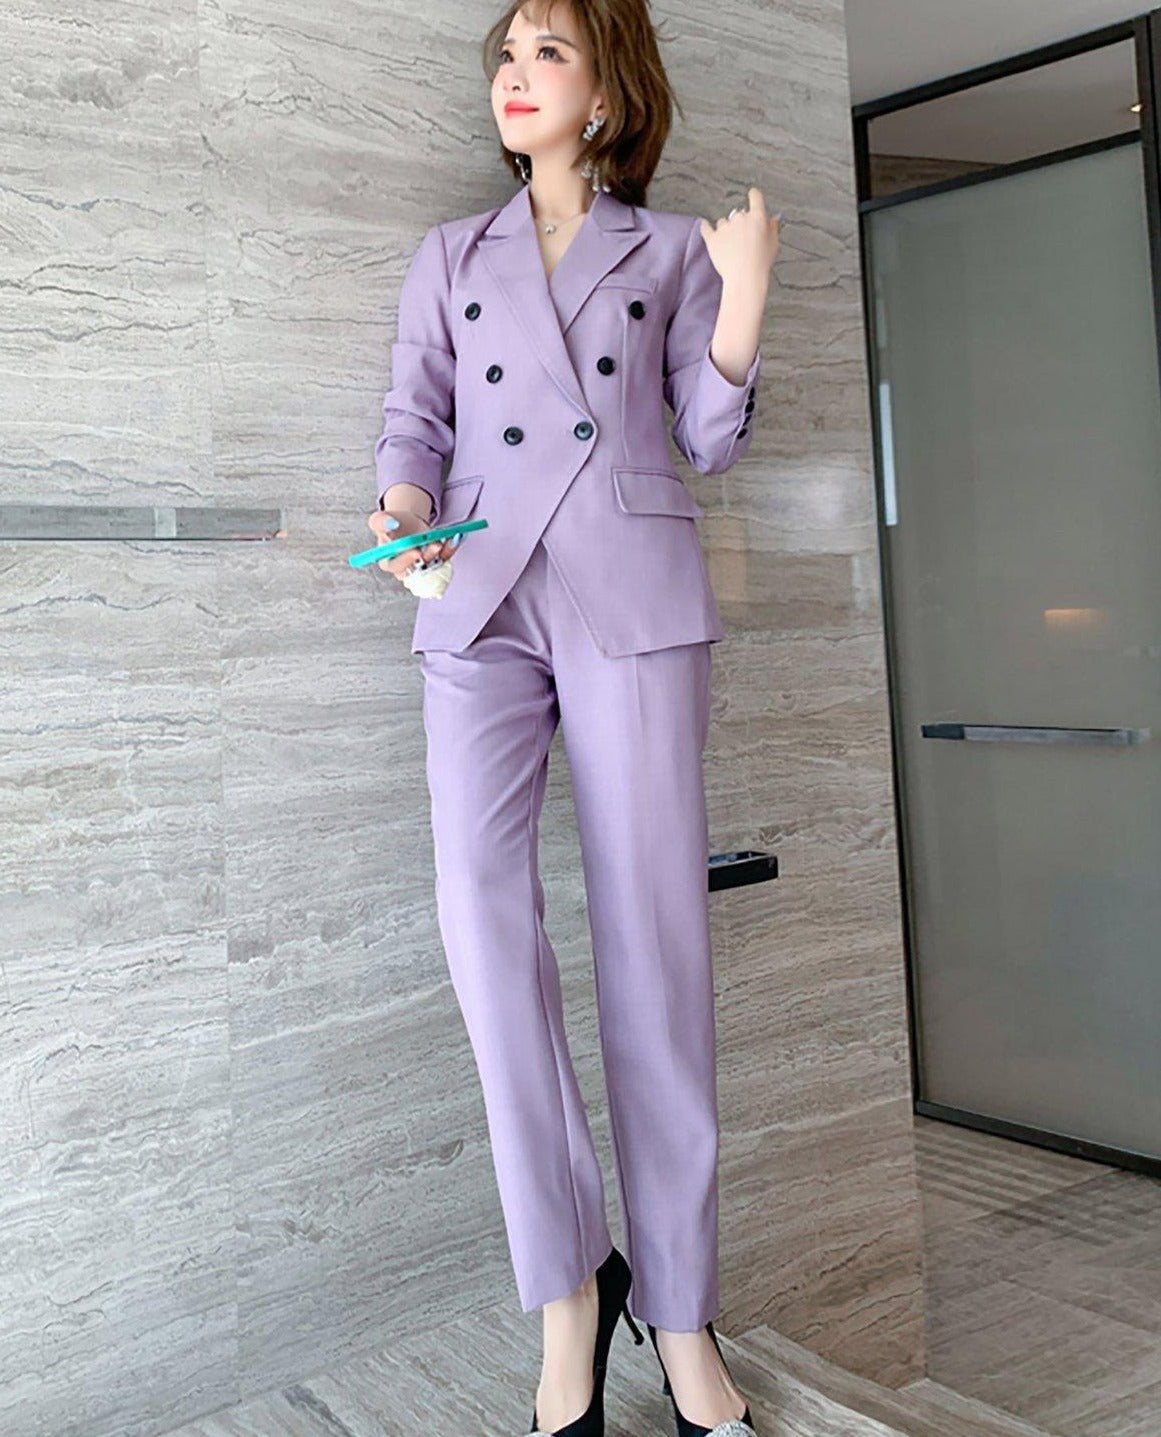 Buy Women Pantsuit, Two Piece Suit, Rose at LeStyleParfait